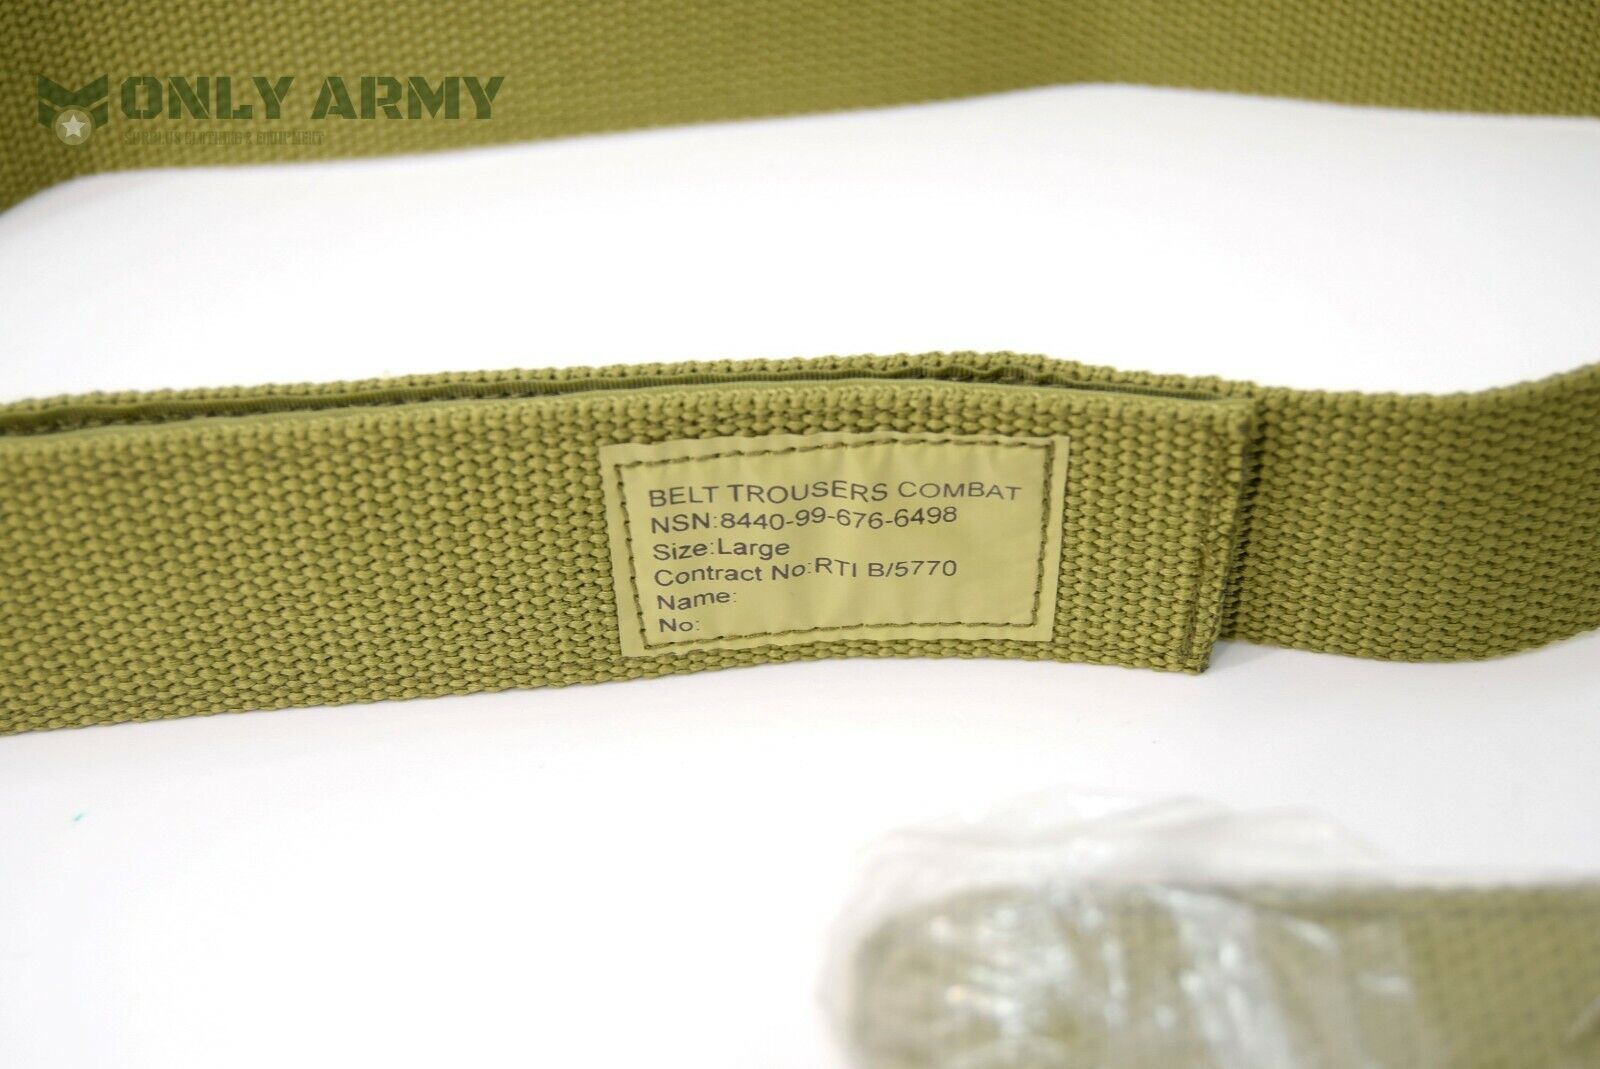 British Army PCS Combat Belt For Combat Trousers Velcr0 Closure MTP Multicam 